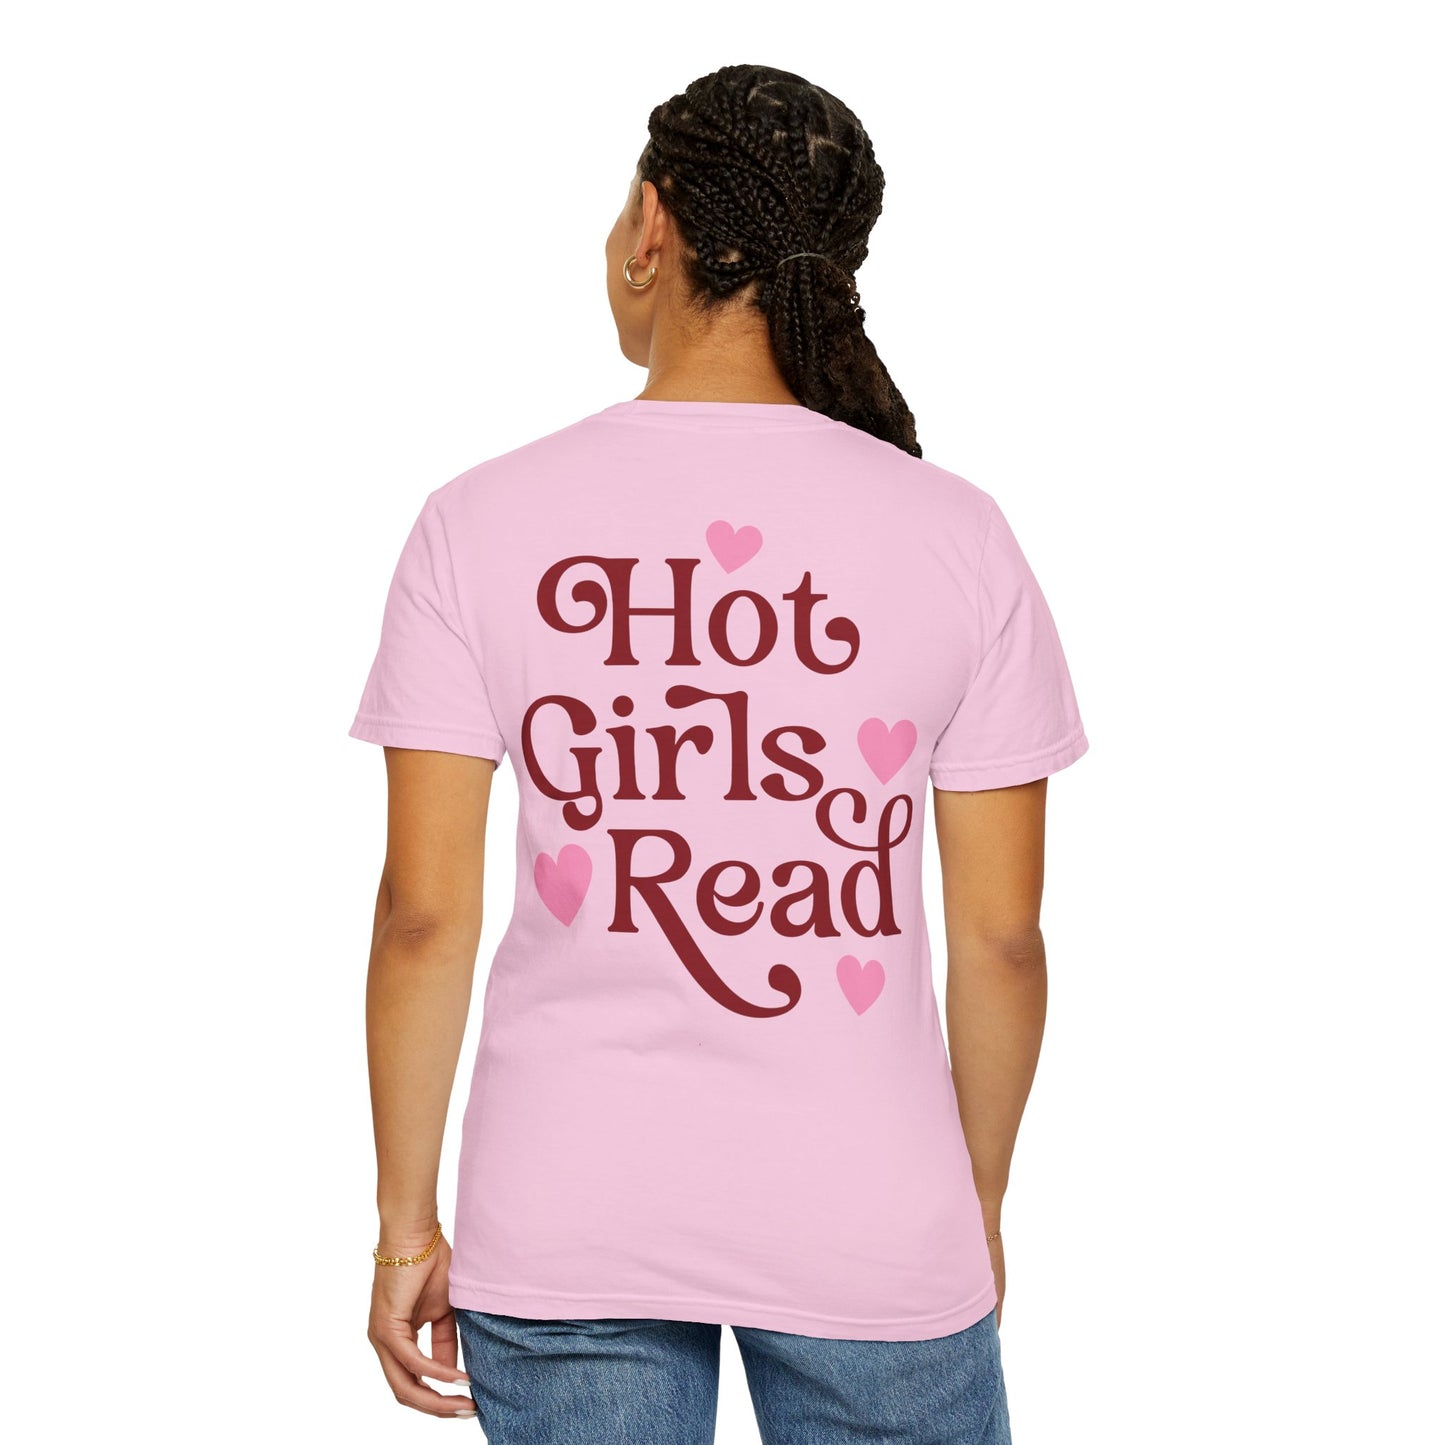 Hot Girls Read - T-shirt